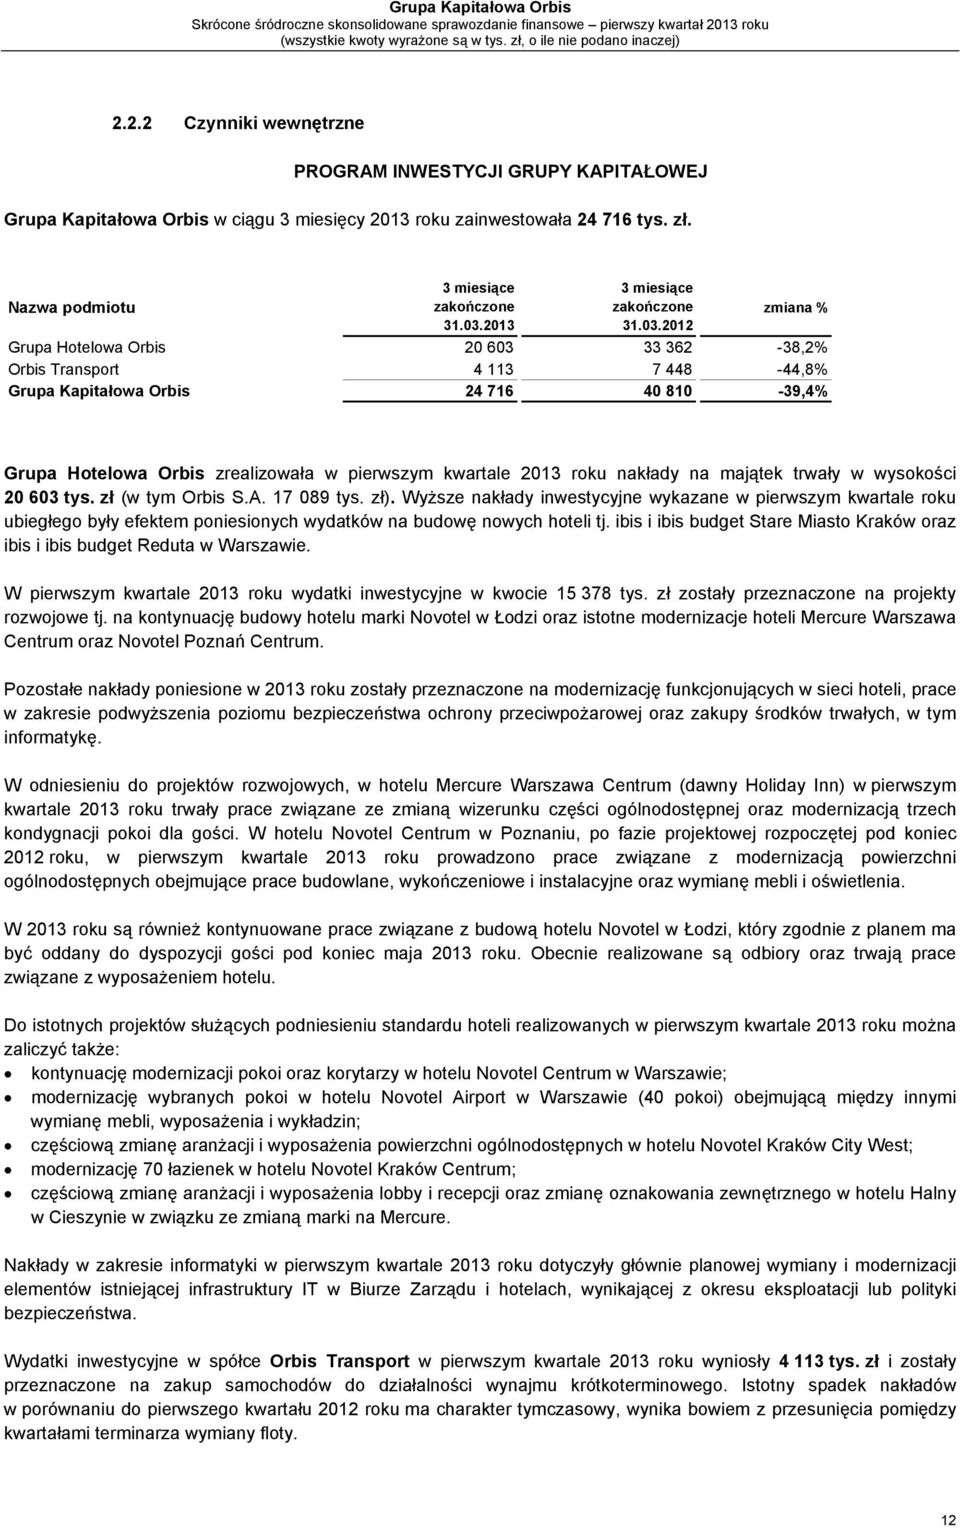 2013 roku nakłady na majątek trwały w wysokości 20 603 tys. zł (w tym Orbis S.A. 17 089 tys. zł).